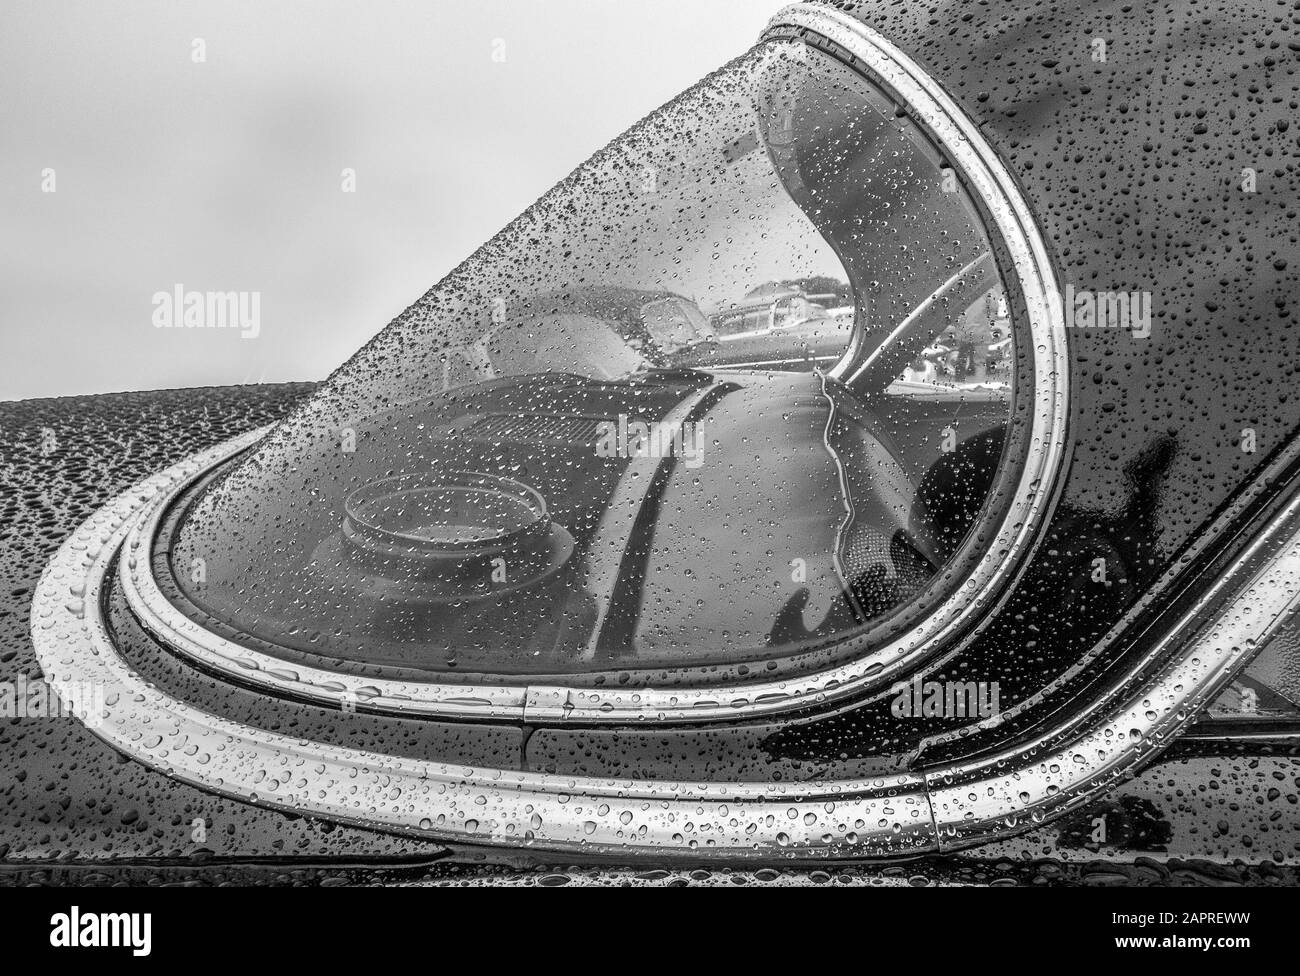 Immagine in scala di grigi della parte anteriore di un'auto coperta in gocce di pioggia Foto Stock